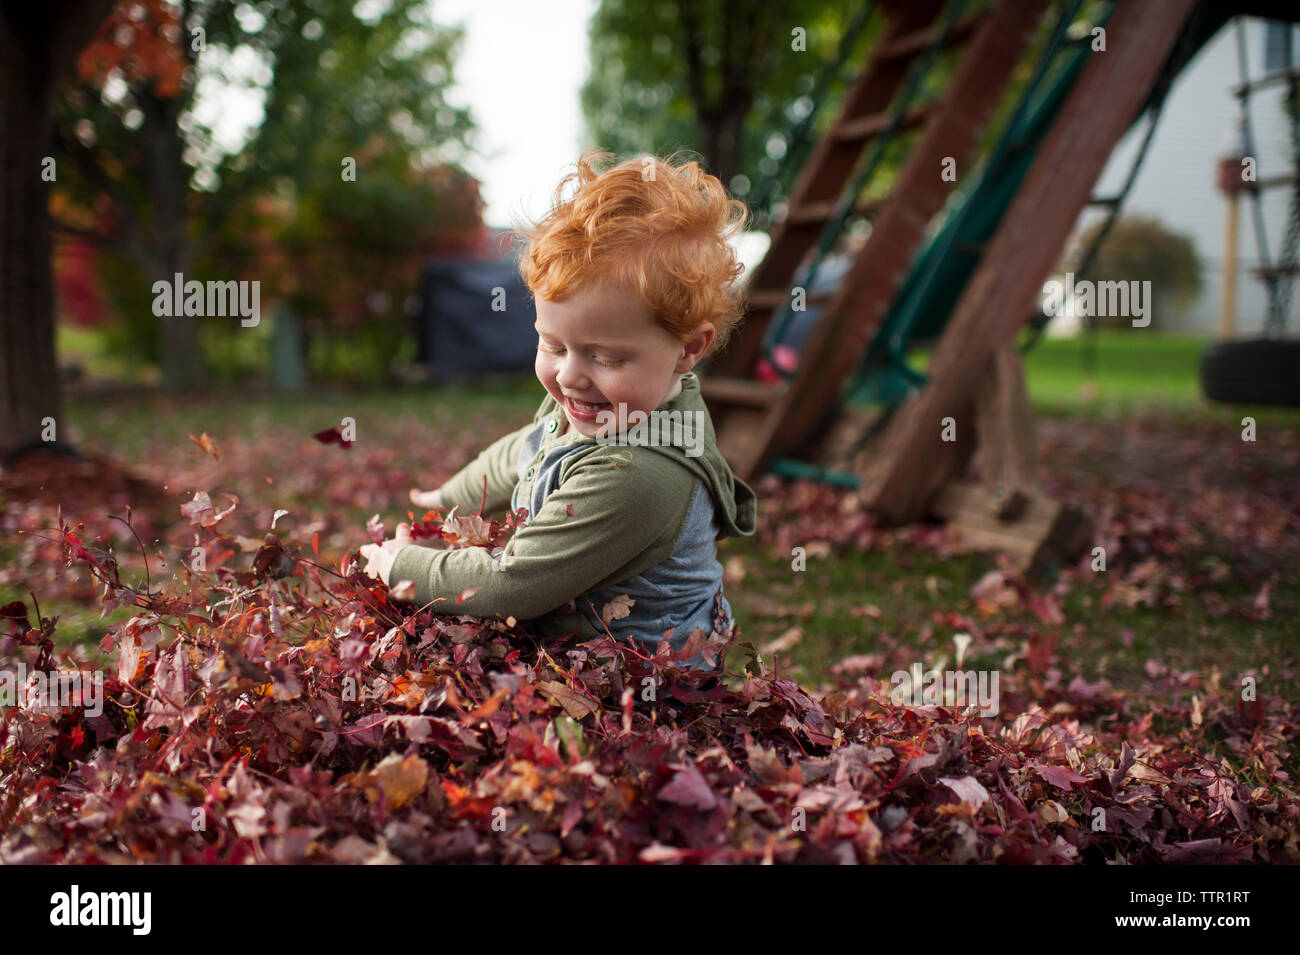 Sweet bébé garçon sourit tout en jouant dans les feuilles dans la cour Banque D'Images